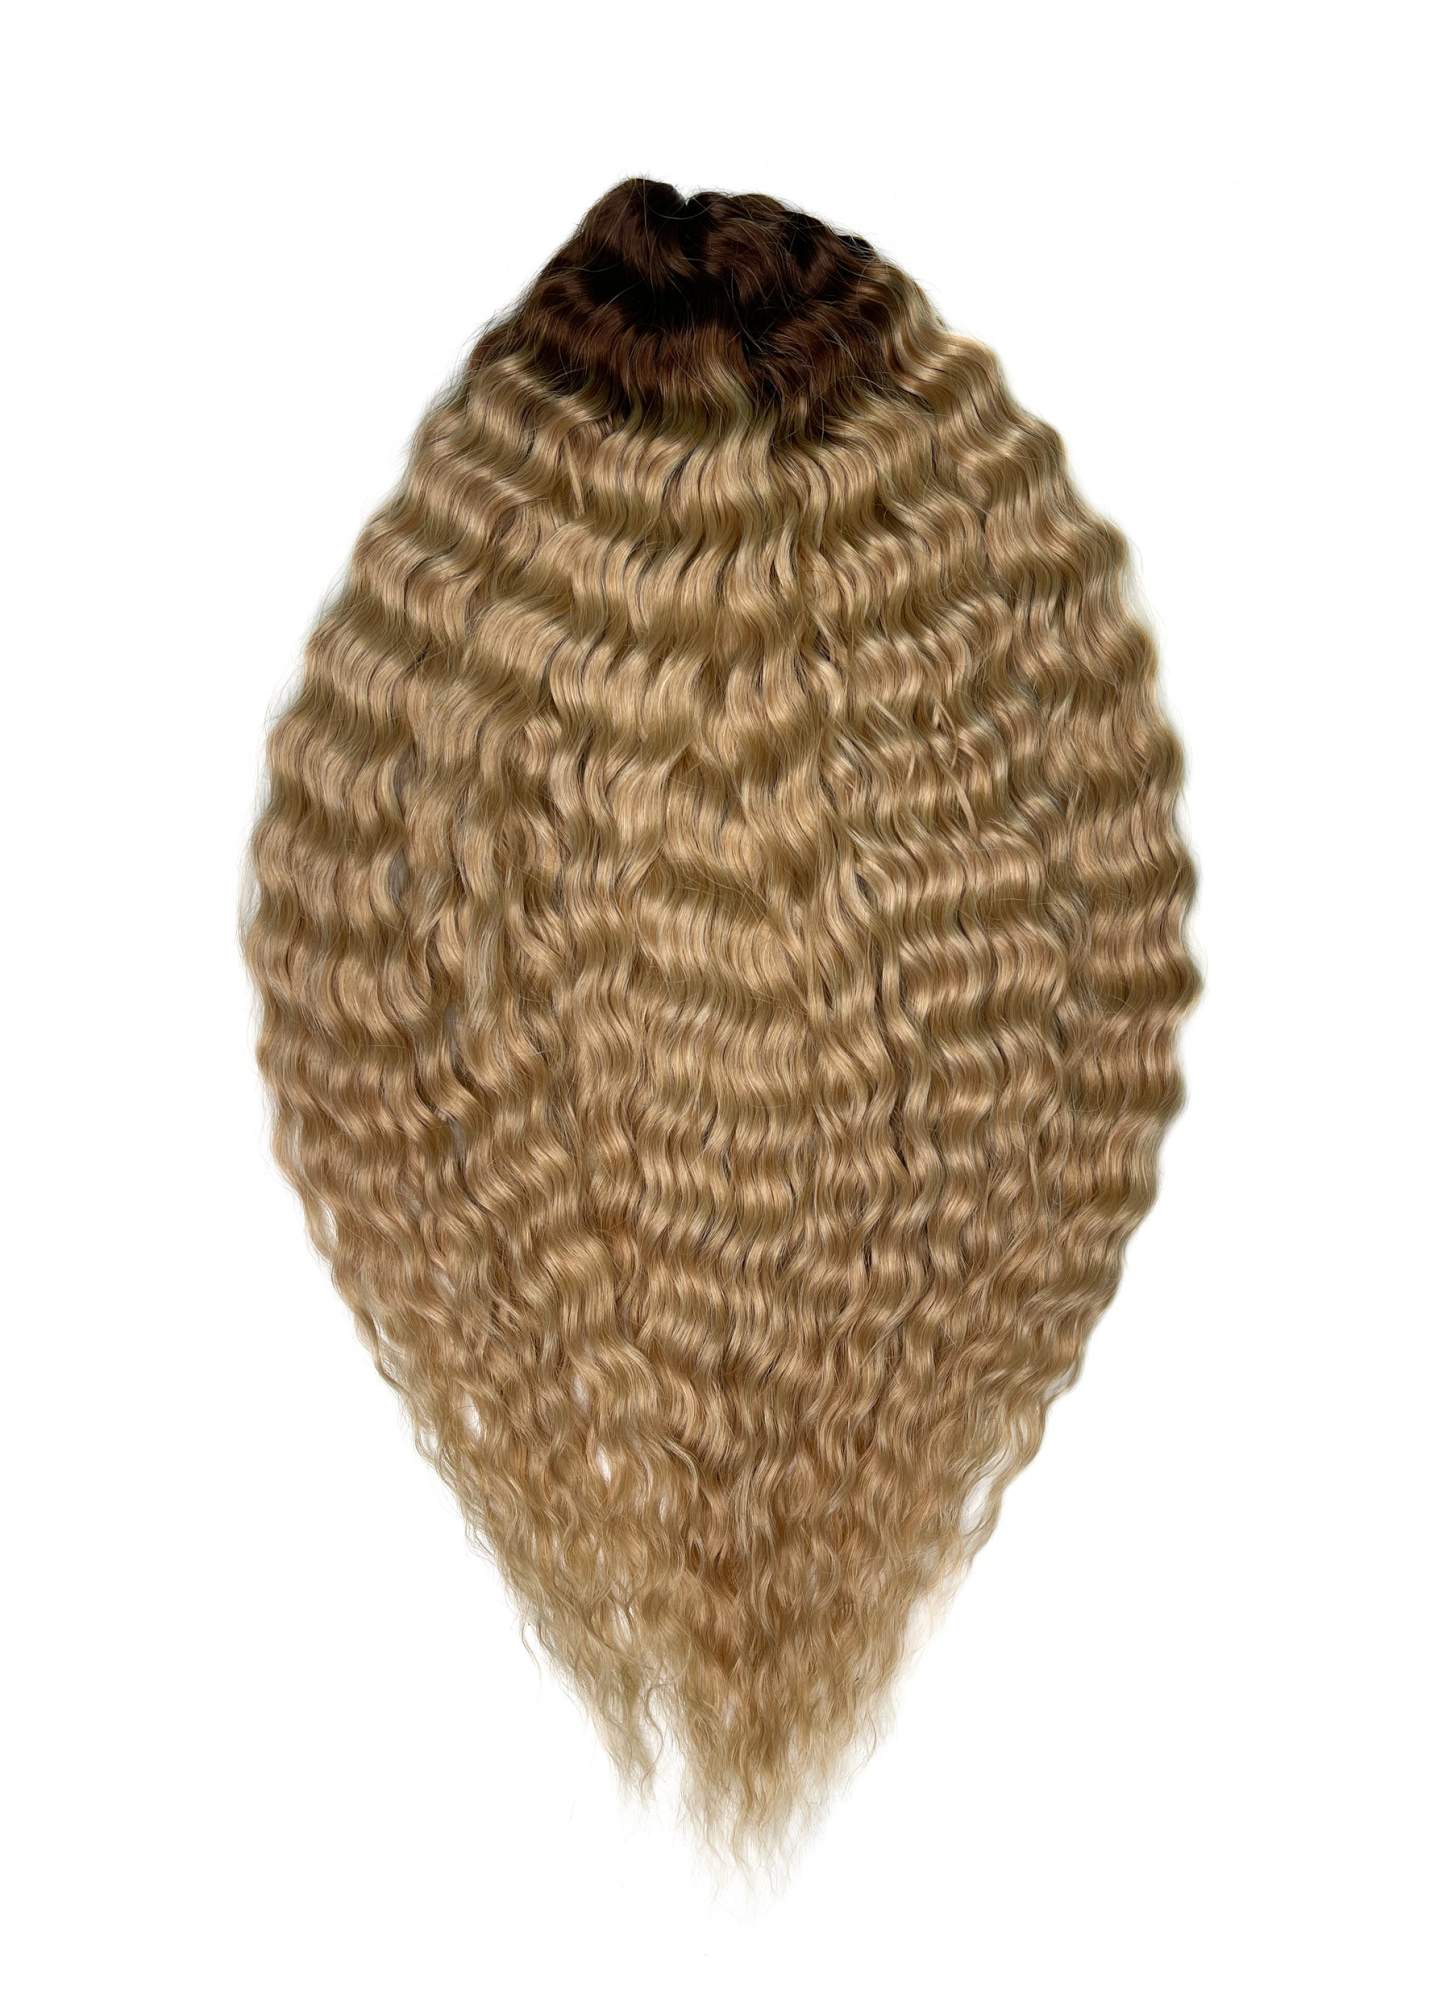 Афрокудри для плетения волос Ariel цвет TT-linen 55 русый длина 55см вес 300г